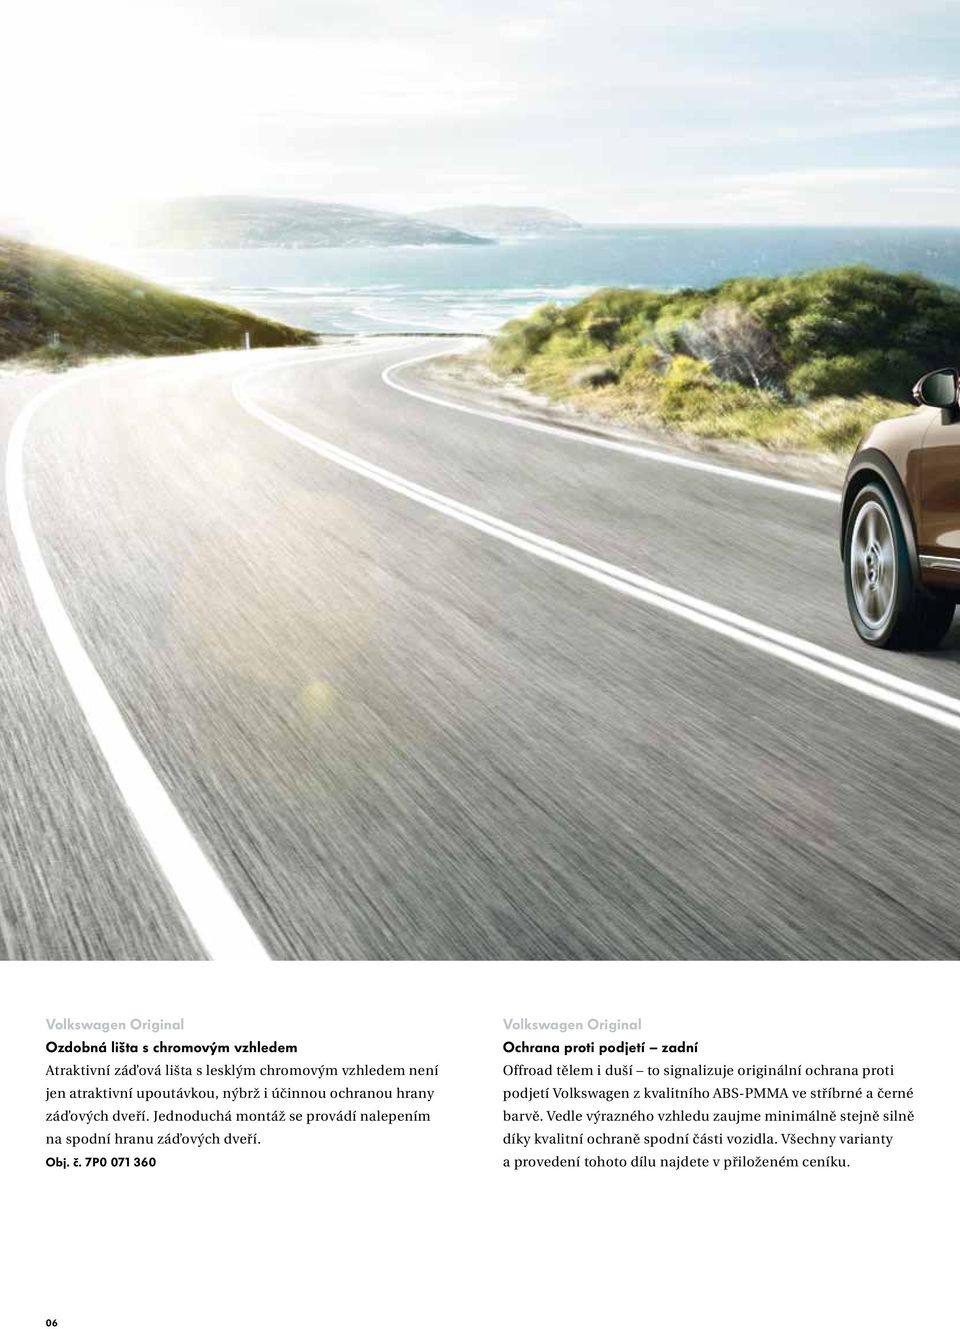 7P0 071 360 Ochrana proti podjetí zadní Offroad tělem i duší to signalizuje originální ochrana proti podjetí Volkswagen z kvalitního ABS-PMMA ve